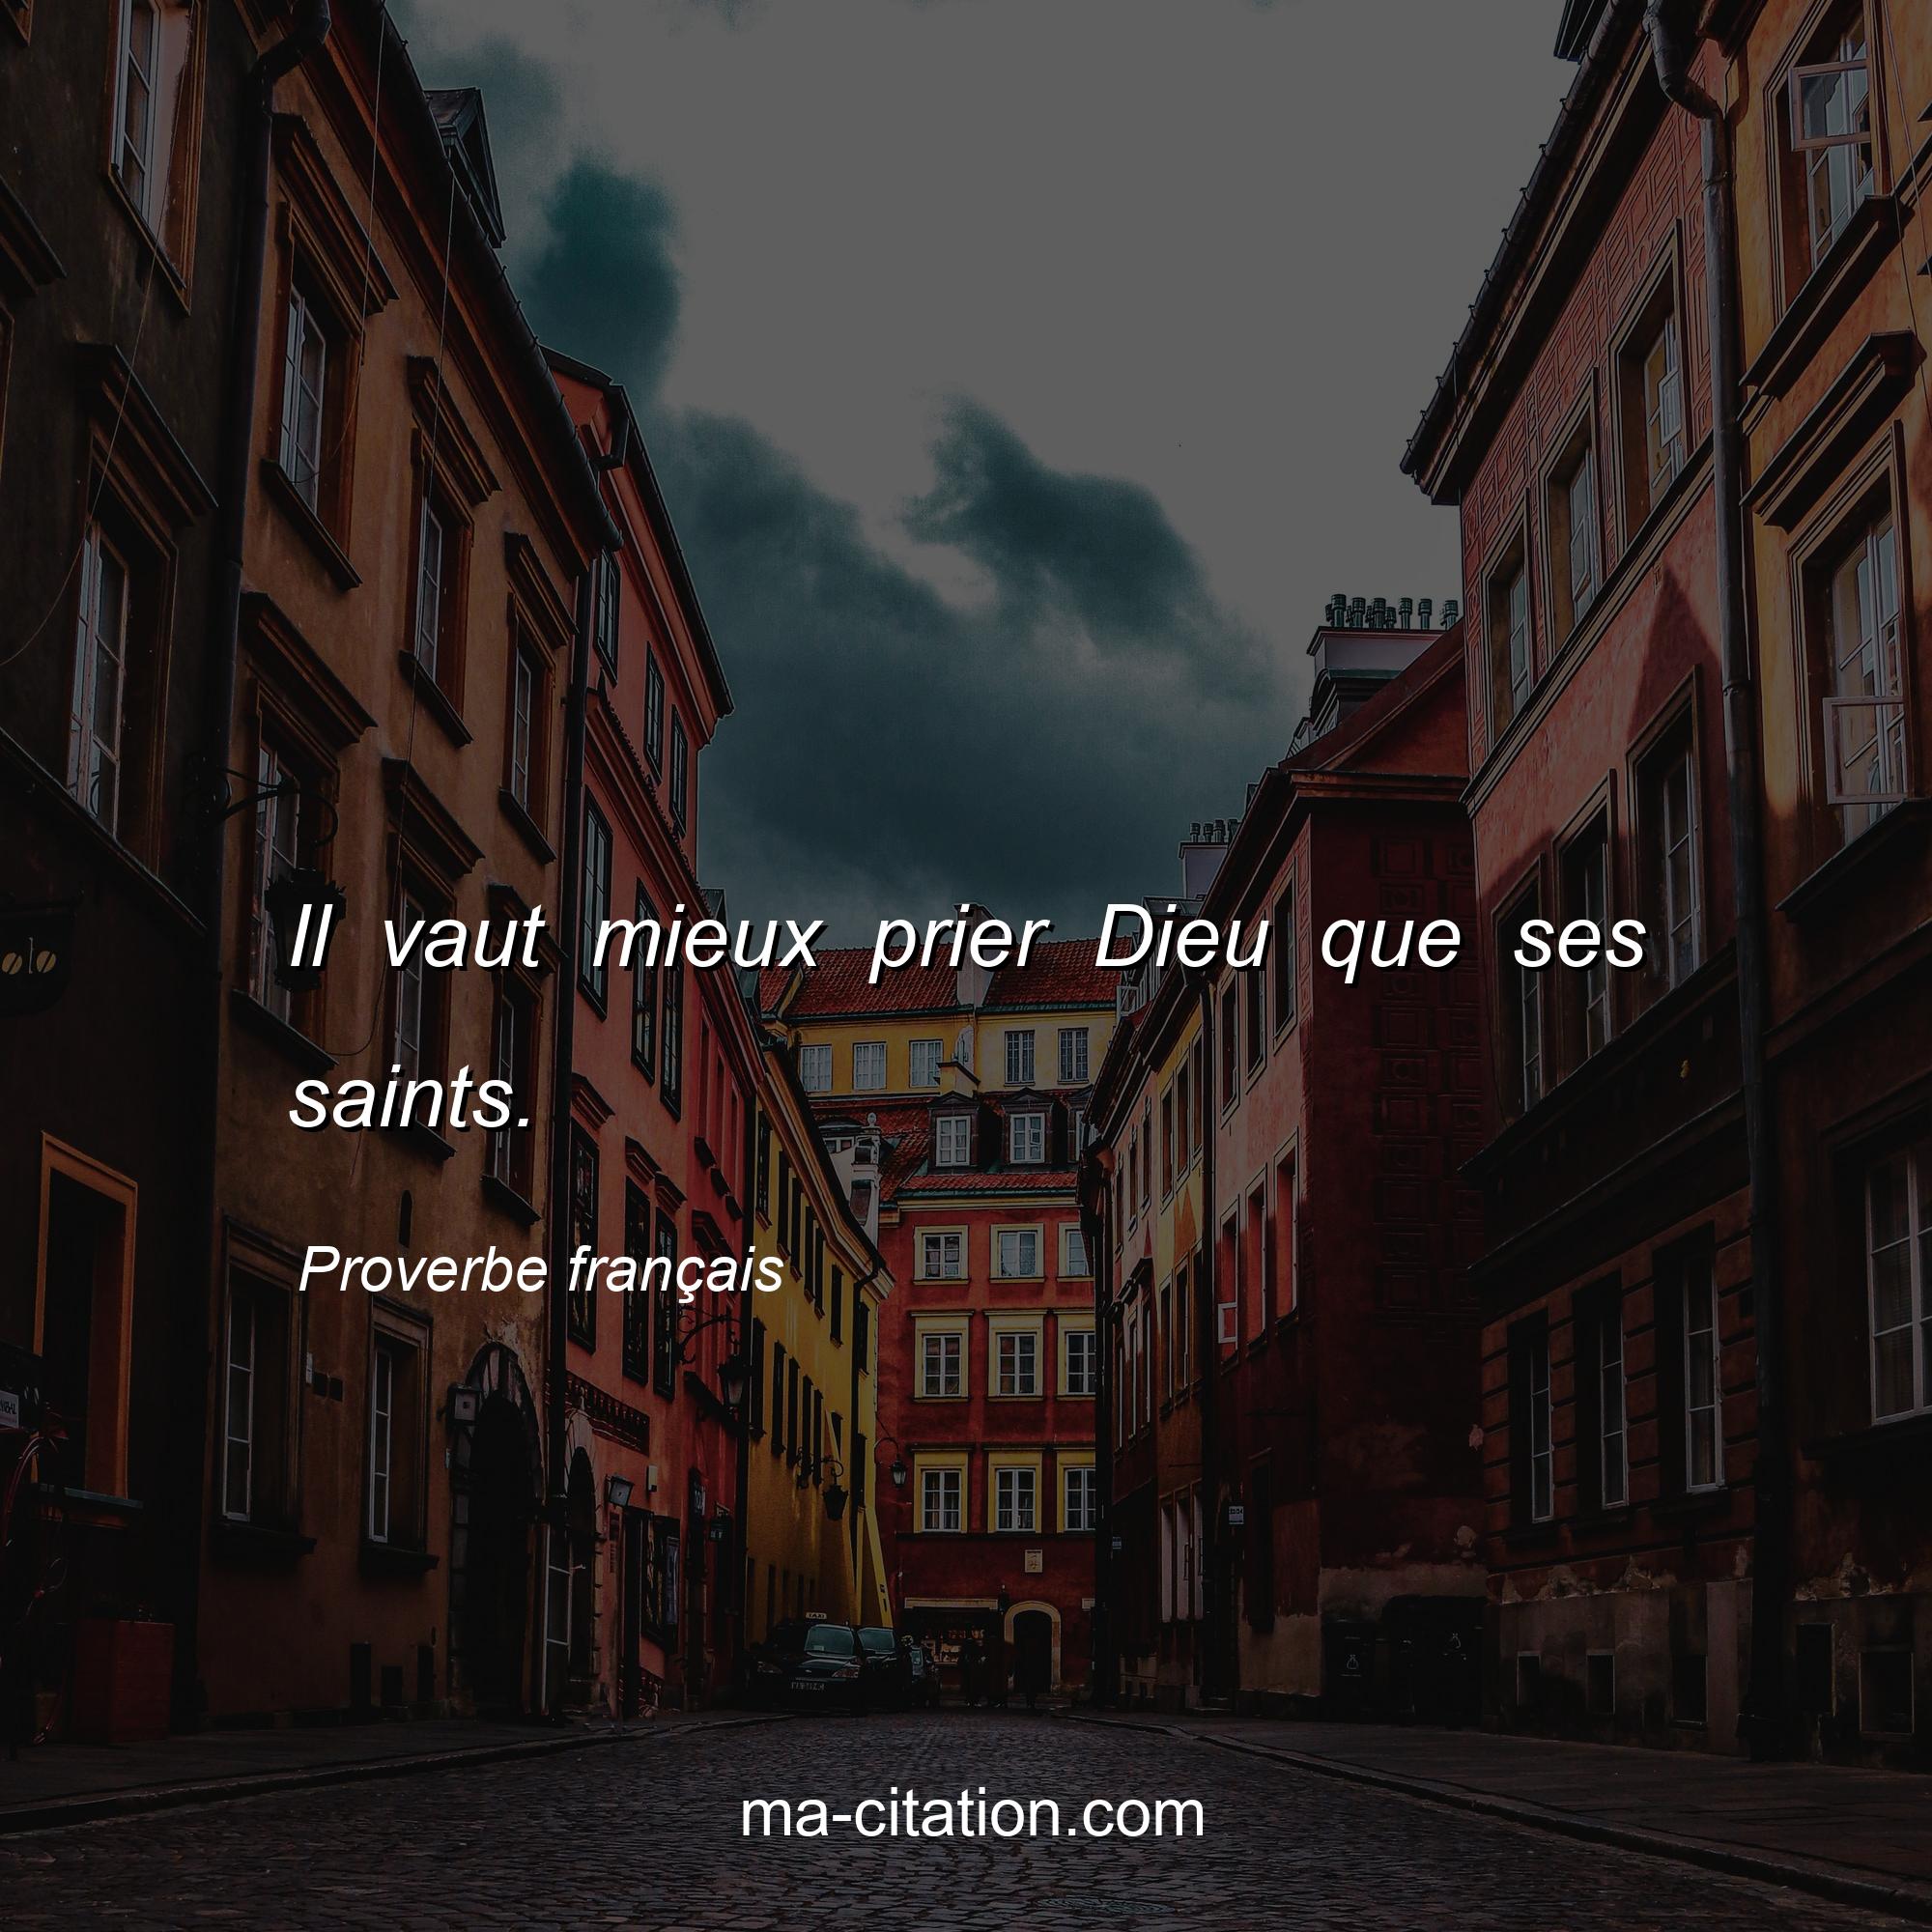 Proverbe français : Il vaut mieux prier Dieu que ses saints.